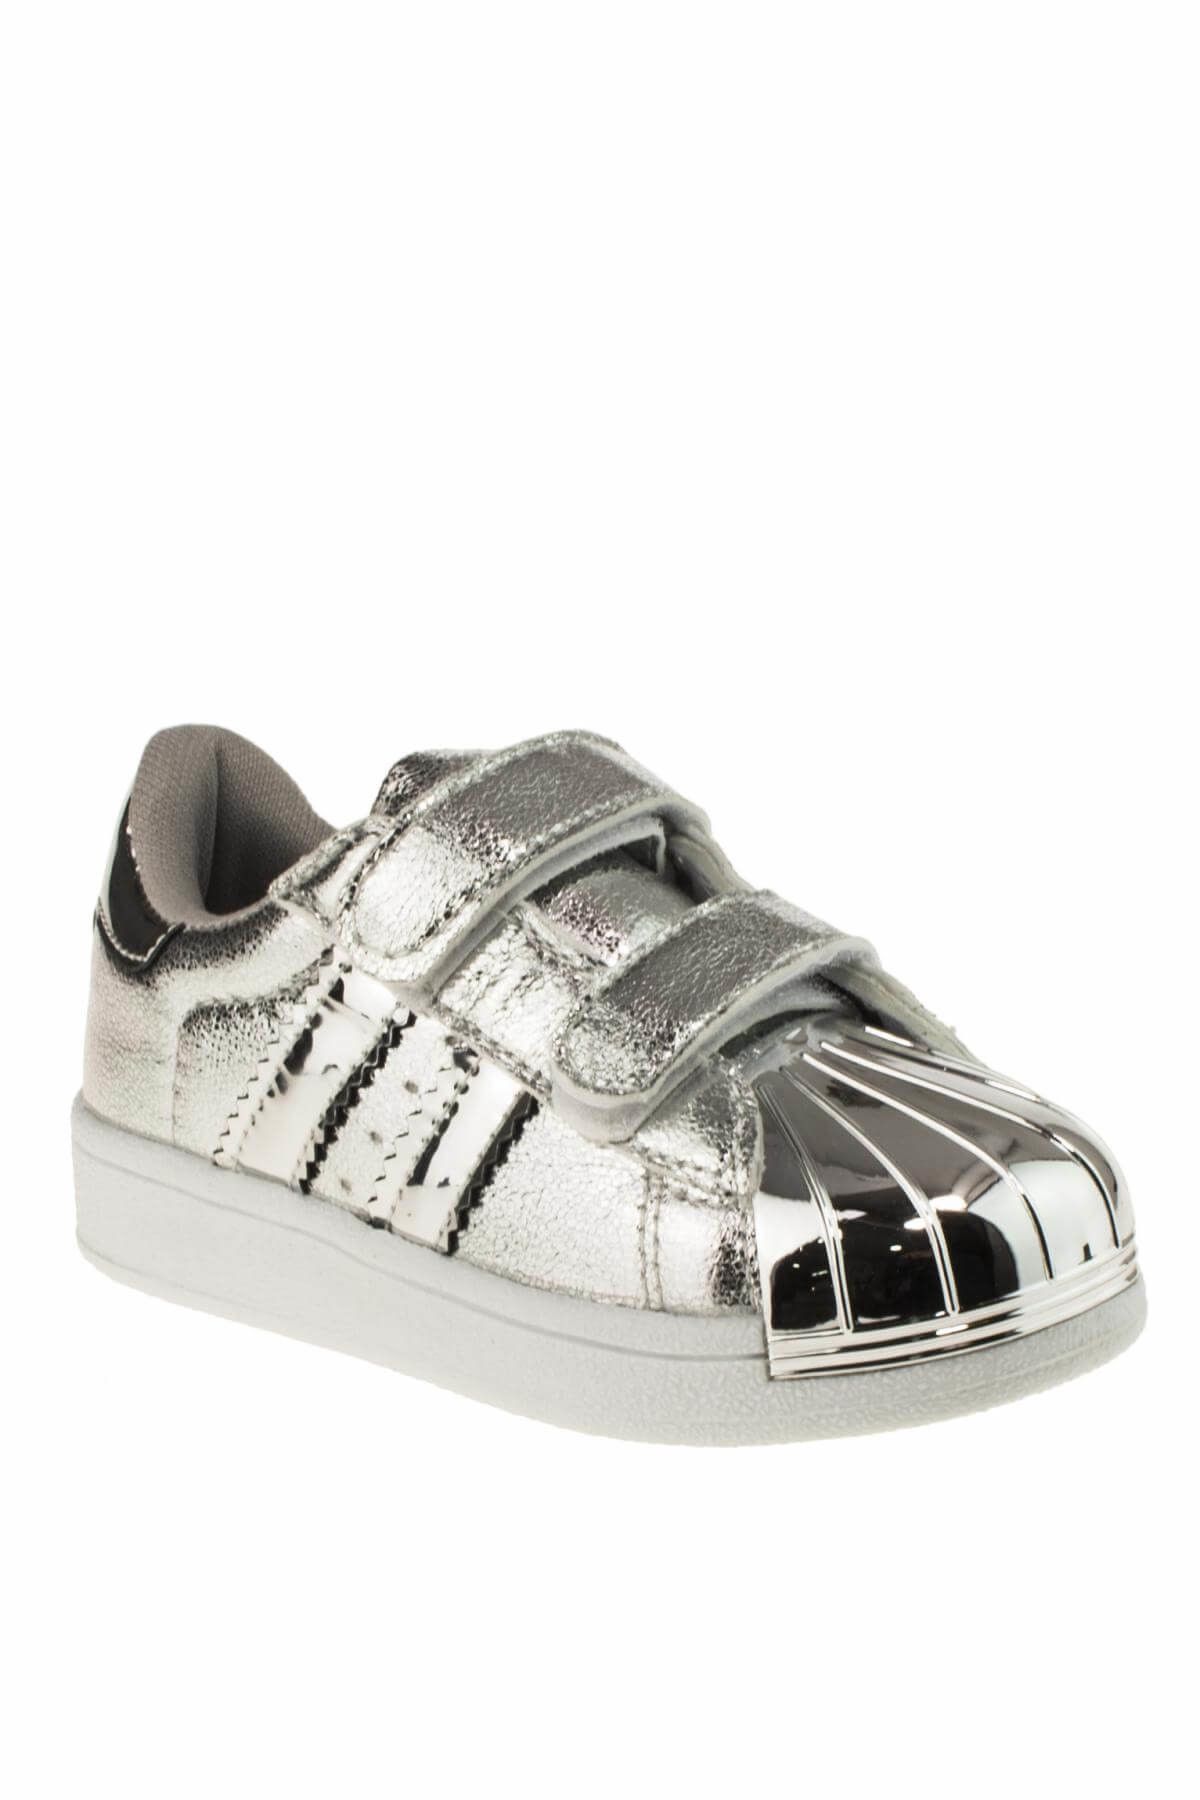 Flubber Gümüş Çocuk Ayakkabı 336 22262P